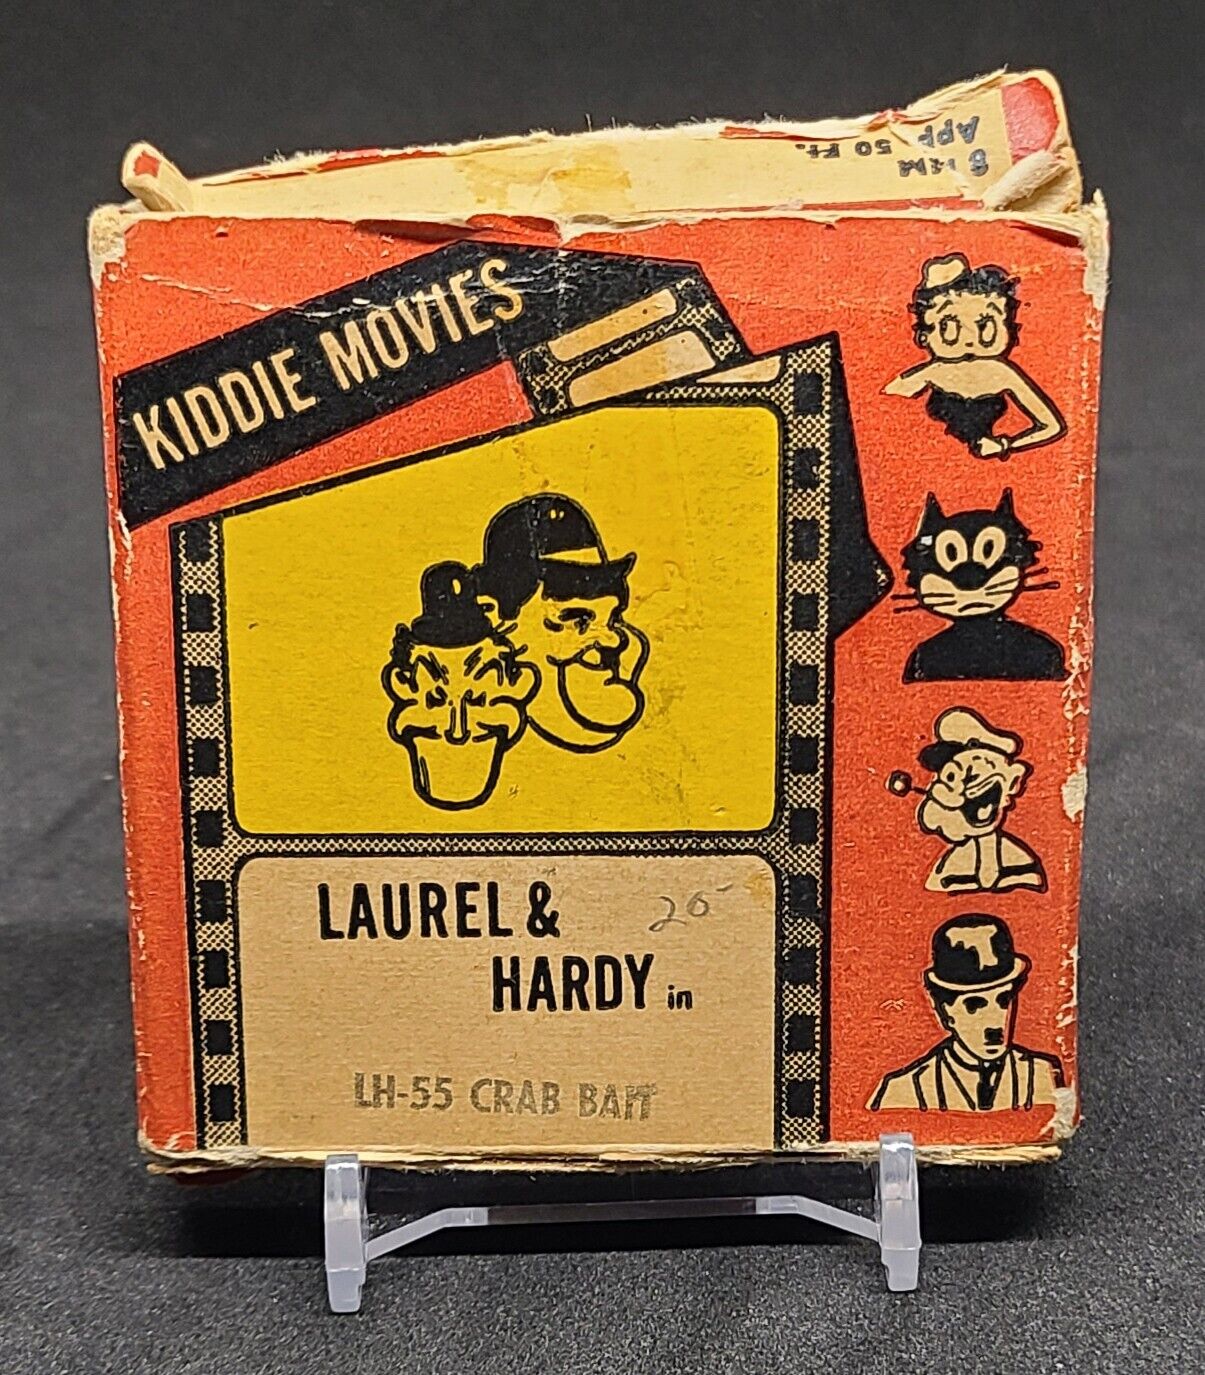 LAUREL & HARDY Kiddie Movies 8mm Film Metro Films Pop Culture 8mm - Hobby Gems